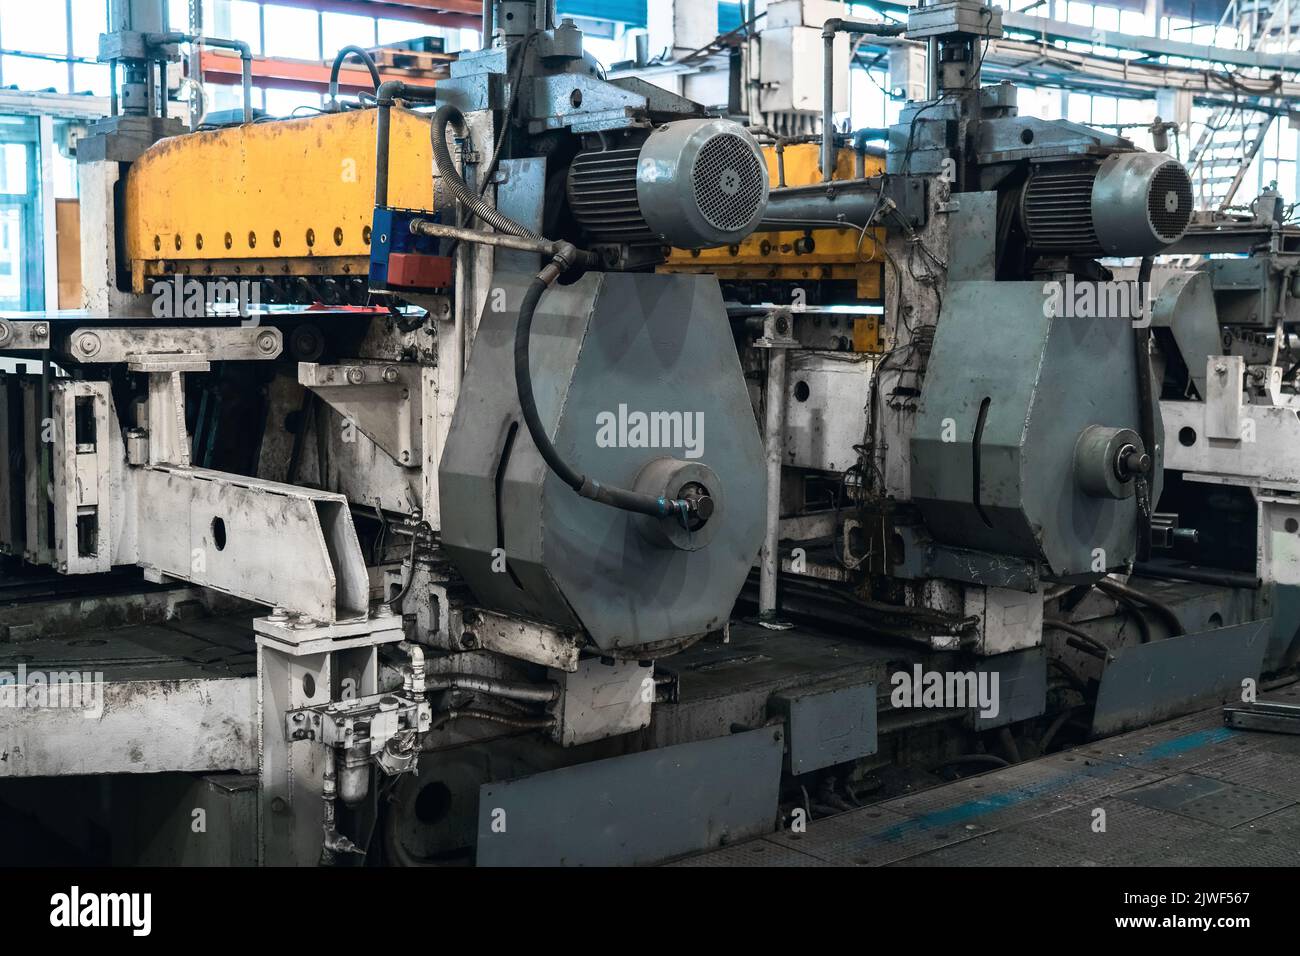 Macchine industriali in fabbrica metallurgica, industria di produzione. Foto Stock